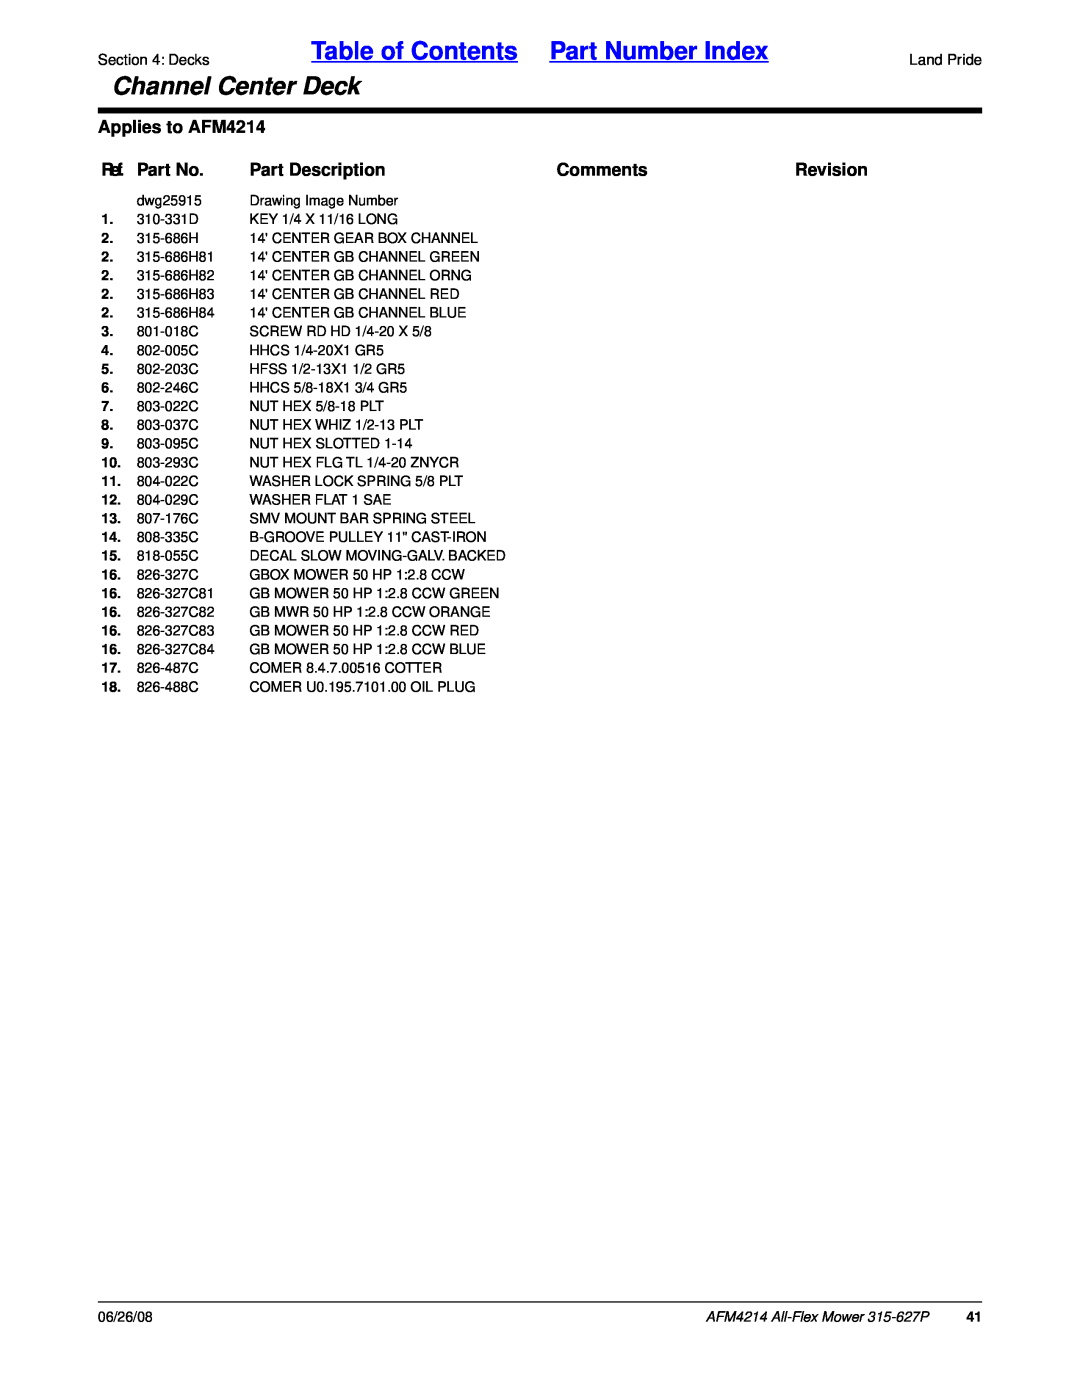 Land Pride Table of Contents Part Number Index, Channel Center Deck, Applies to AFM4214, Ref. Part No, Part Description 